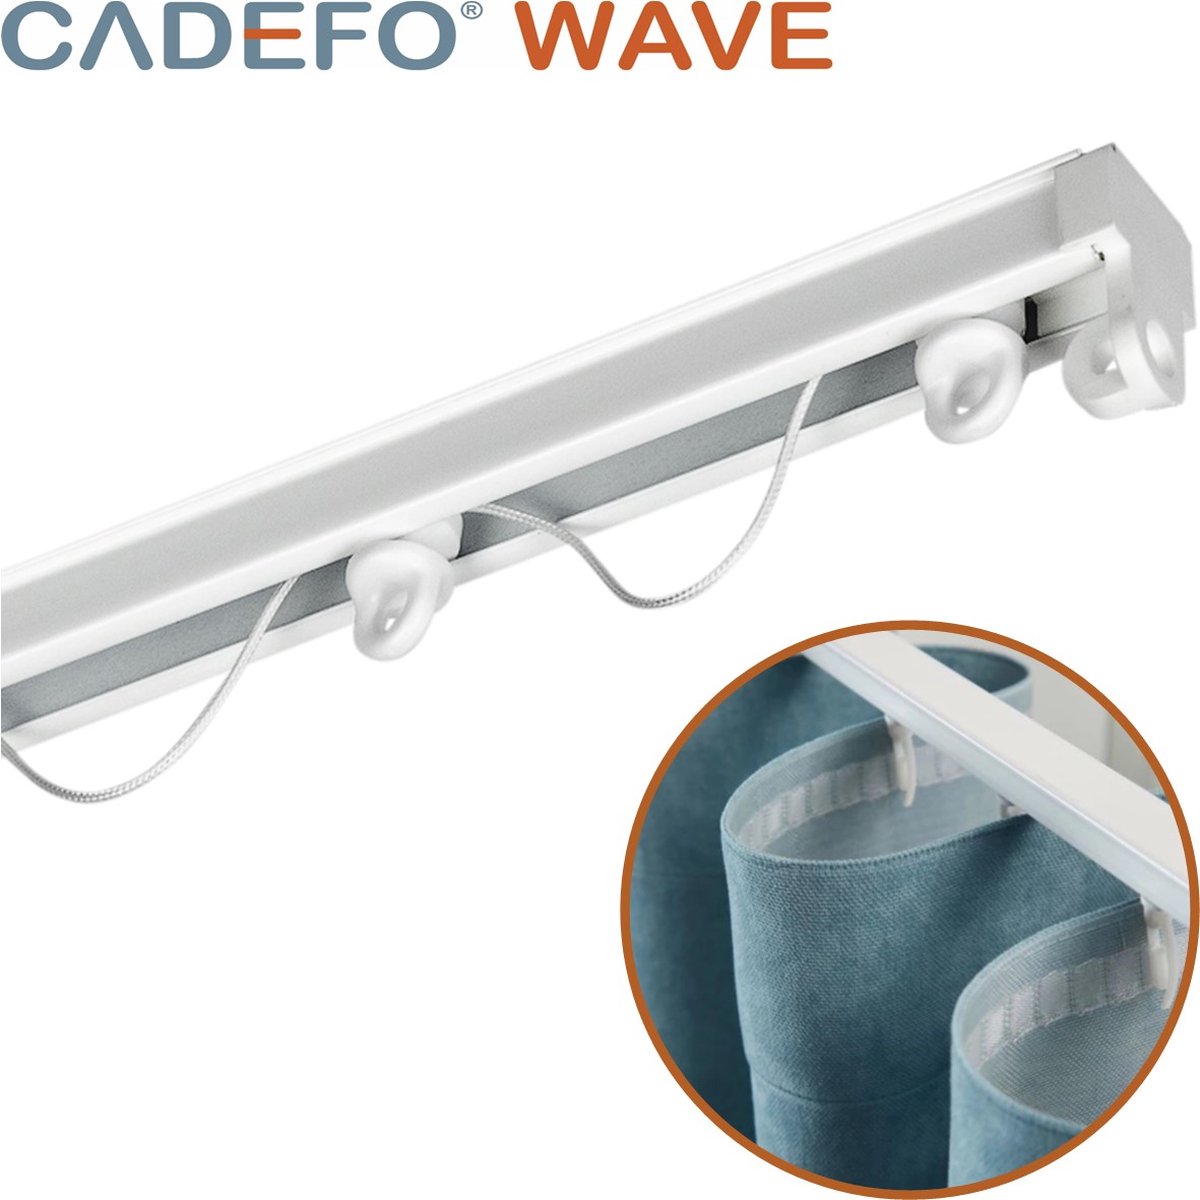 CADEFO WAVE (451 - 500 cm) Gordijnrails - Compleet op maat! - UIT 1 STUK - Leverbaar tot 6 meter - Plafondbevestiging - Lengte 454 cm